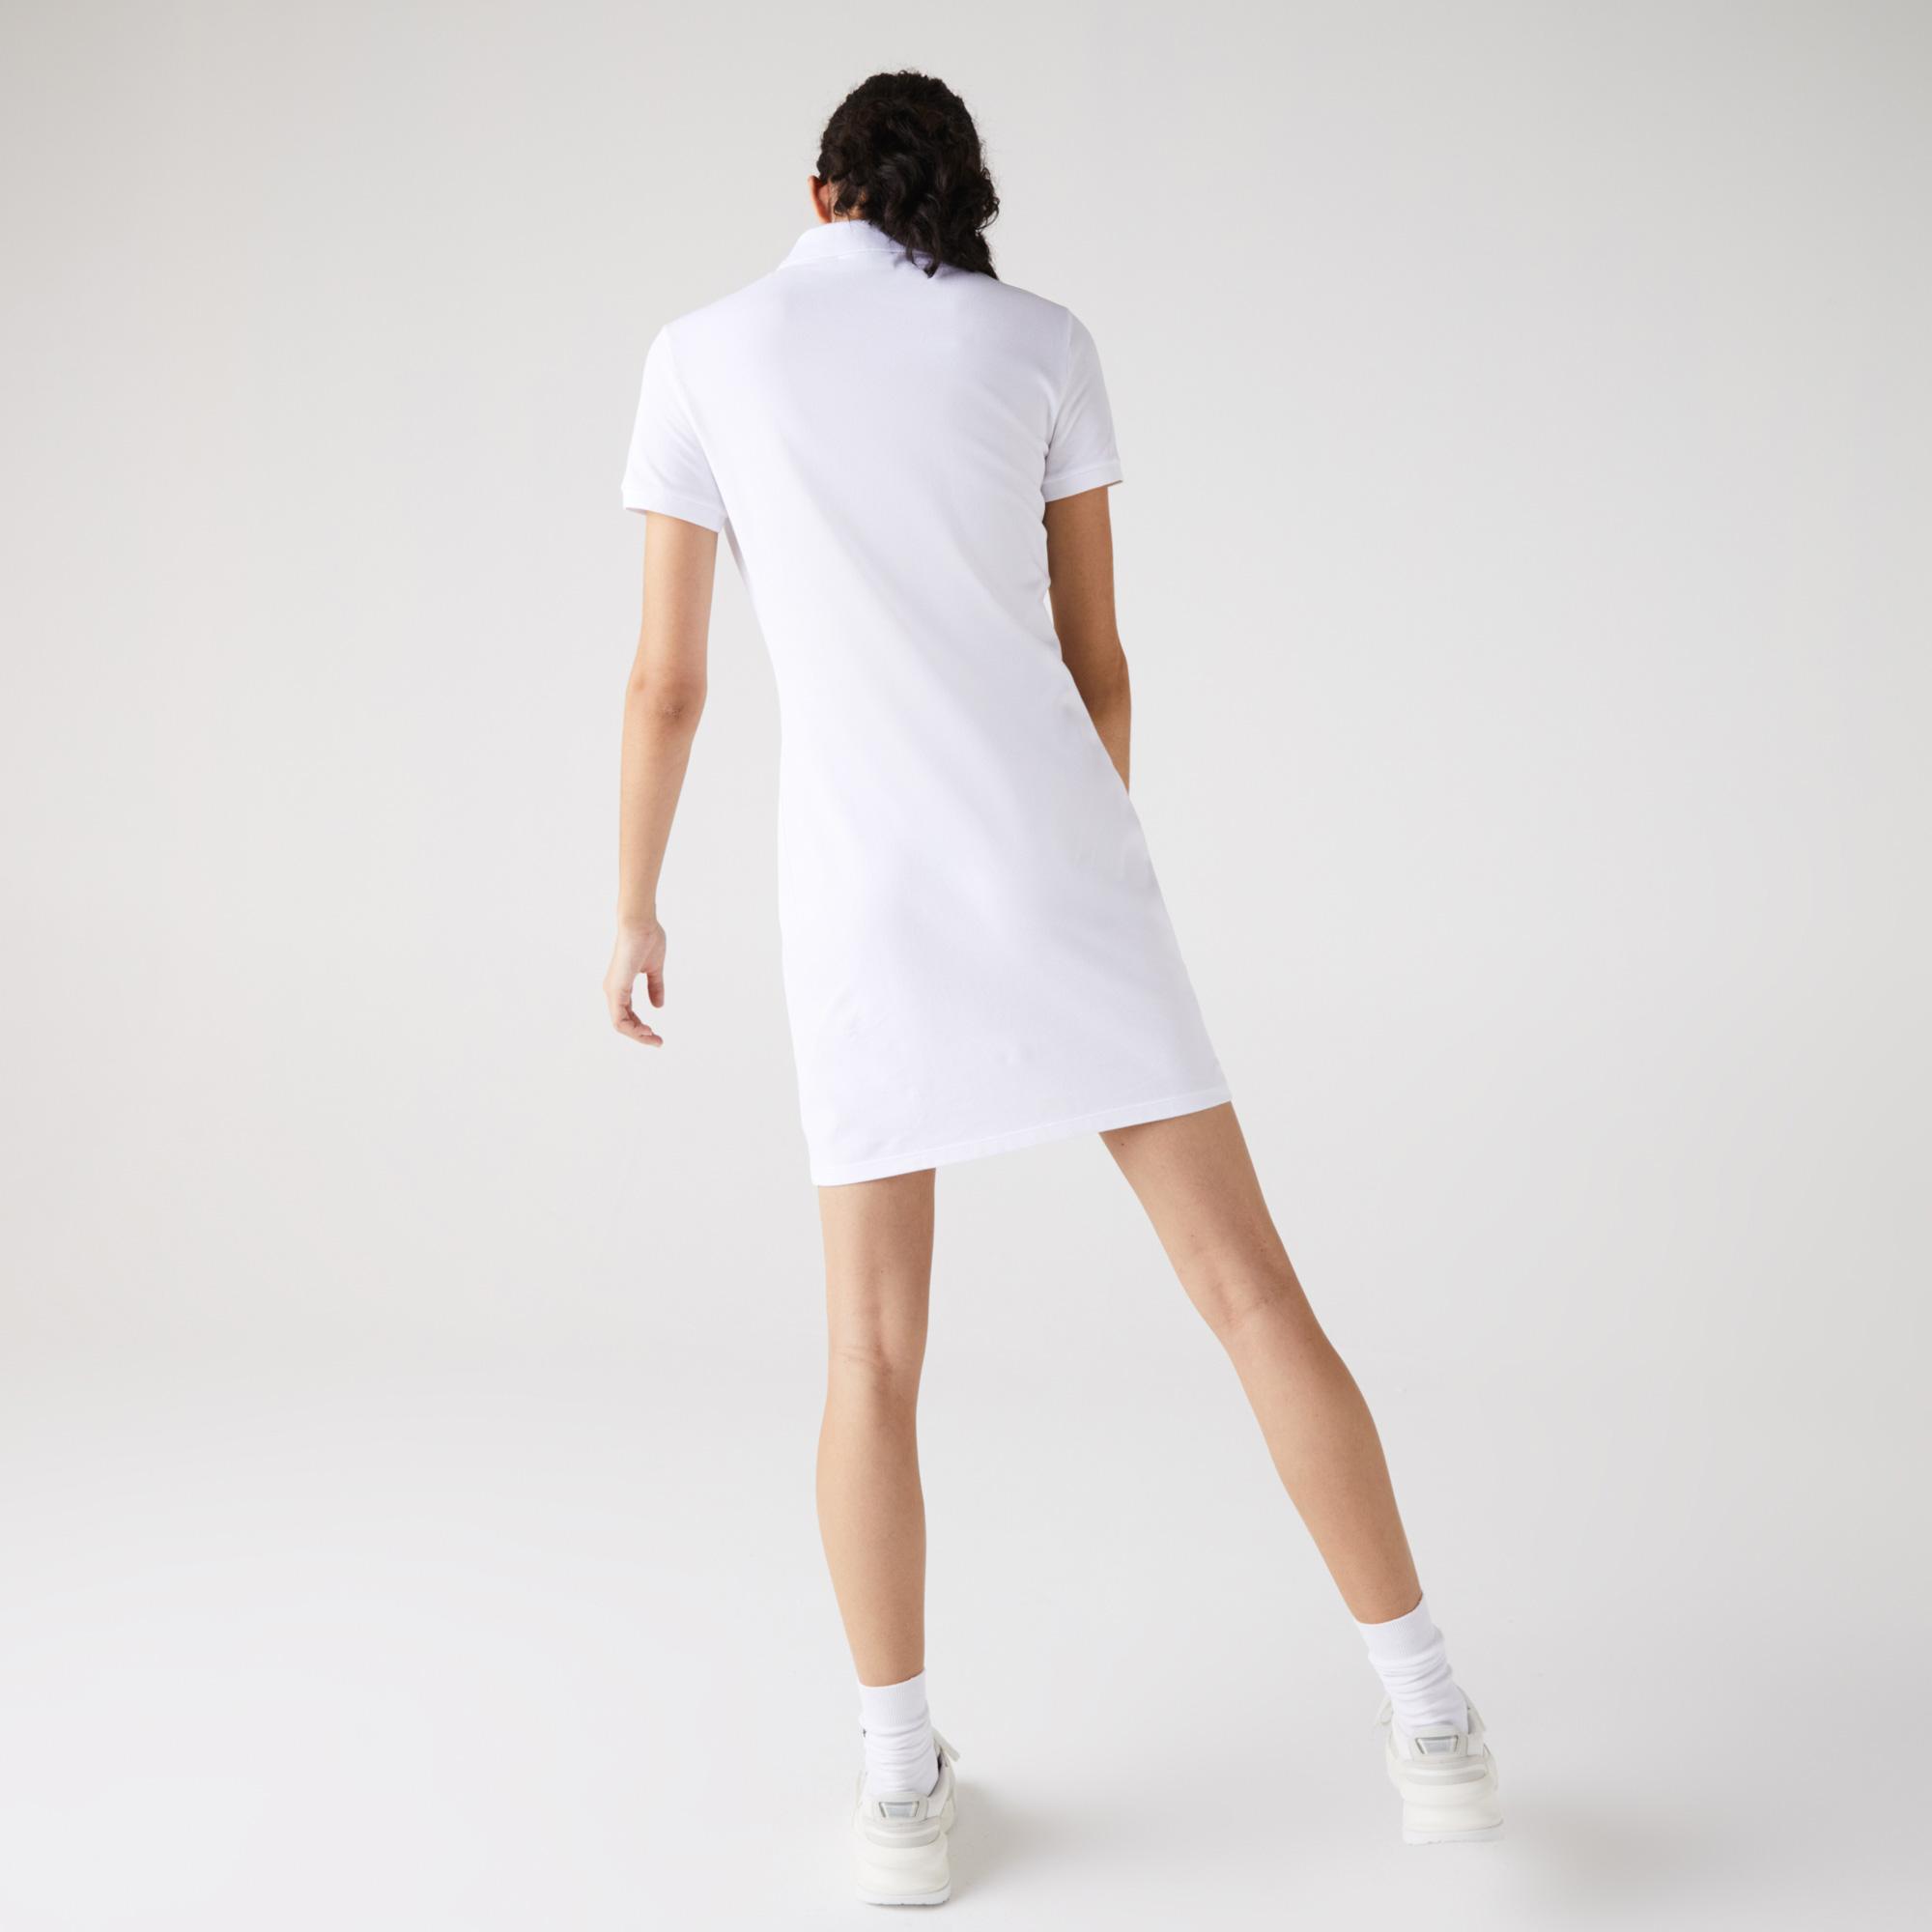 Lacoste Kadın Slim Fit Kısa Kollu Polo Yaka Beyaz Elbise. 7